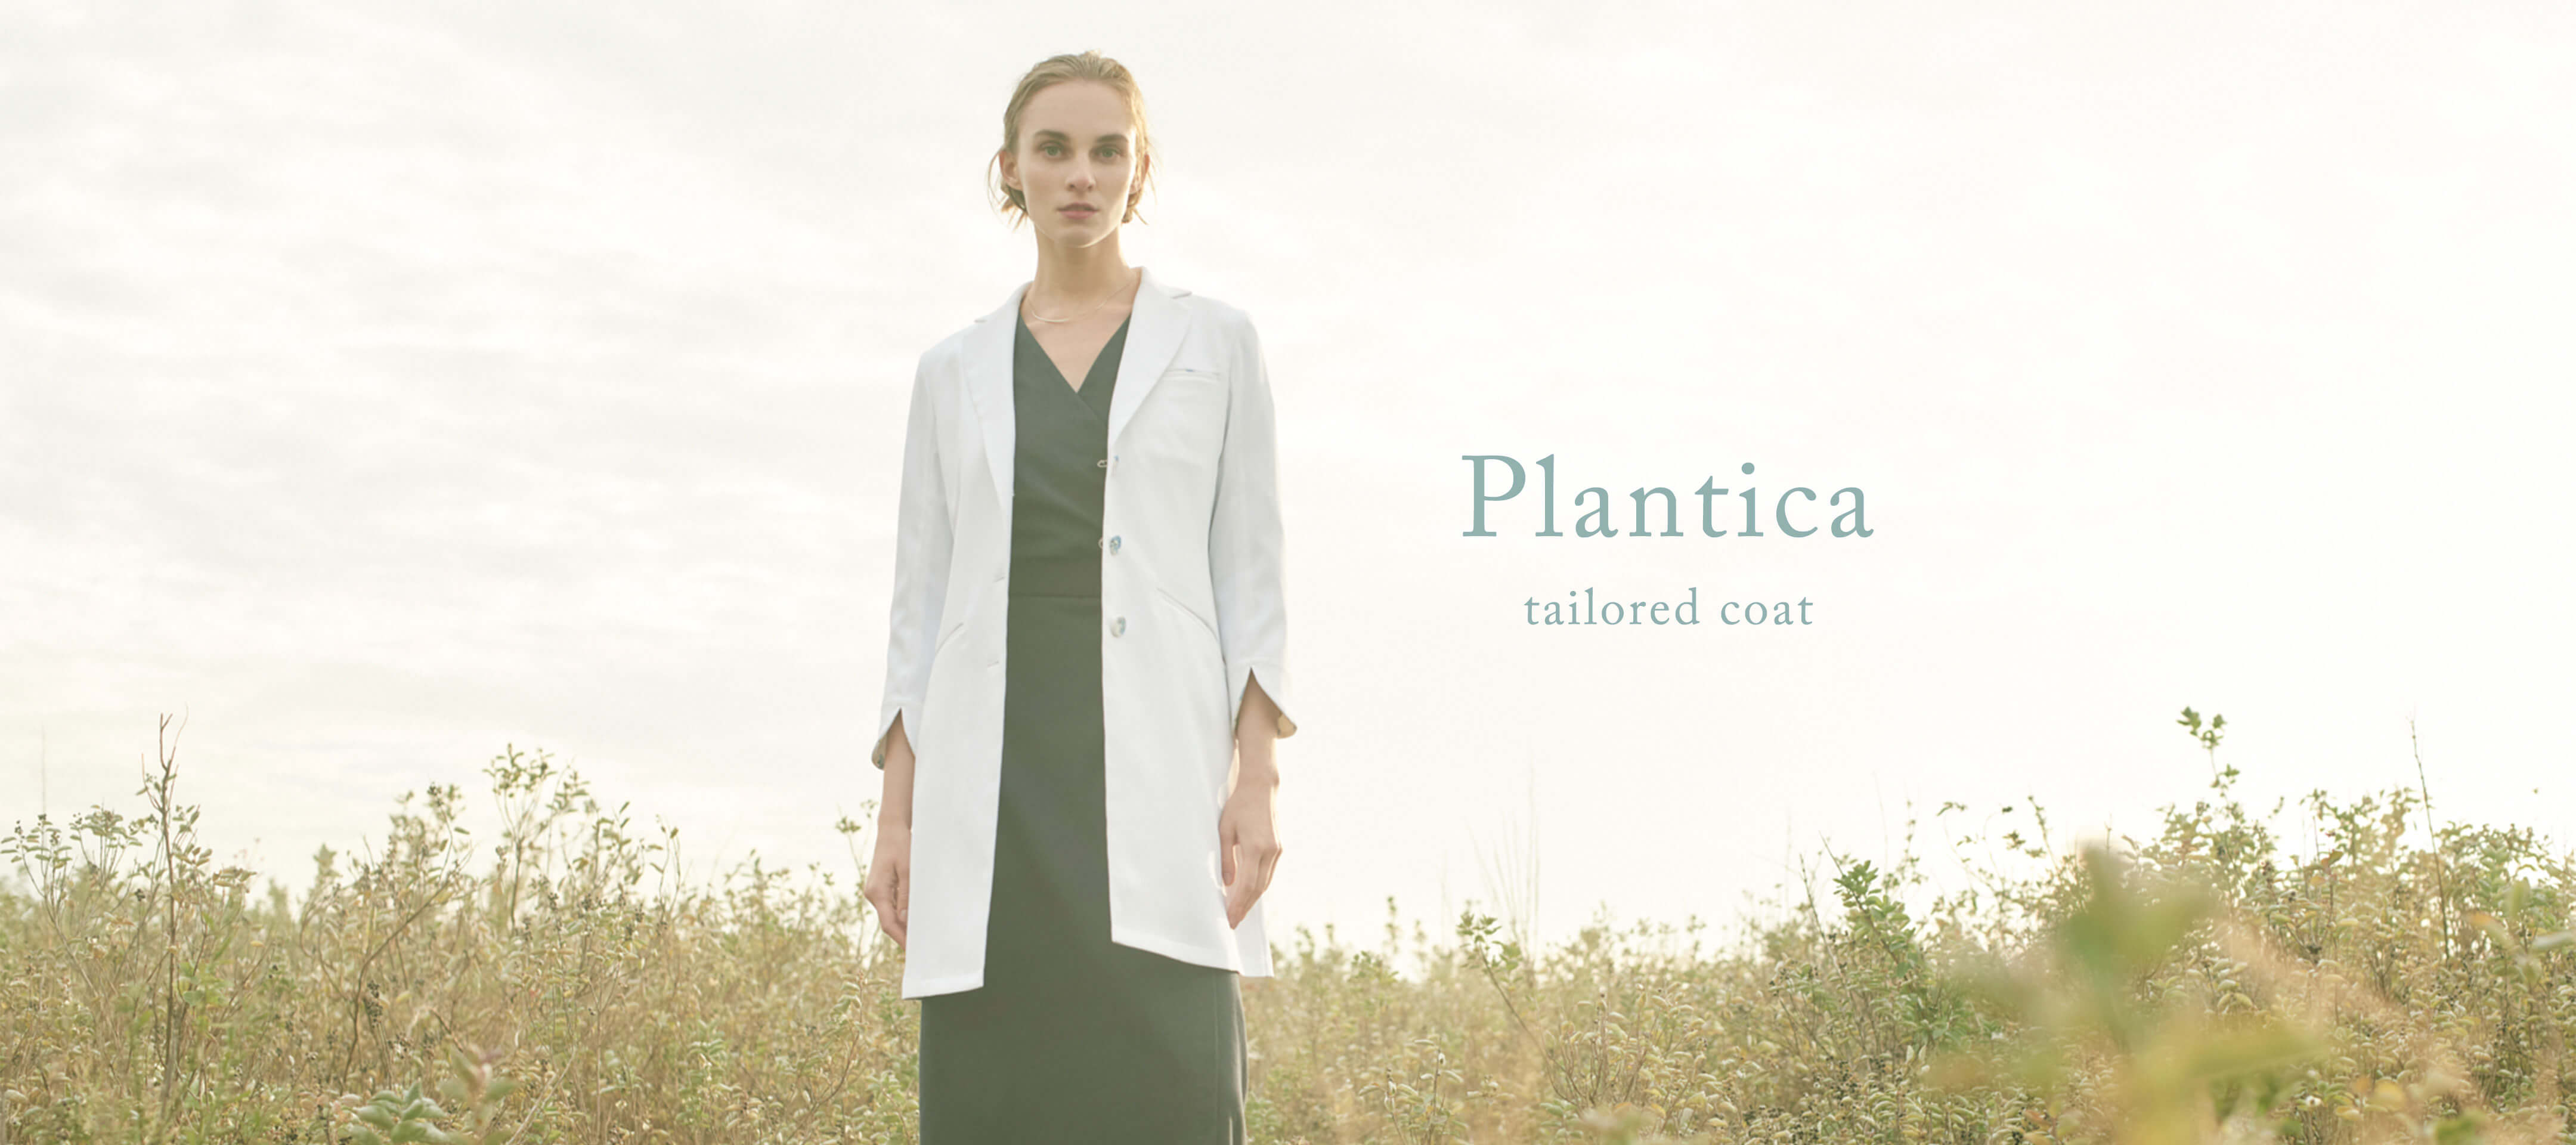 Plantica tailored coat